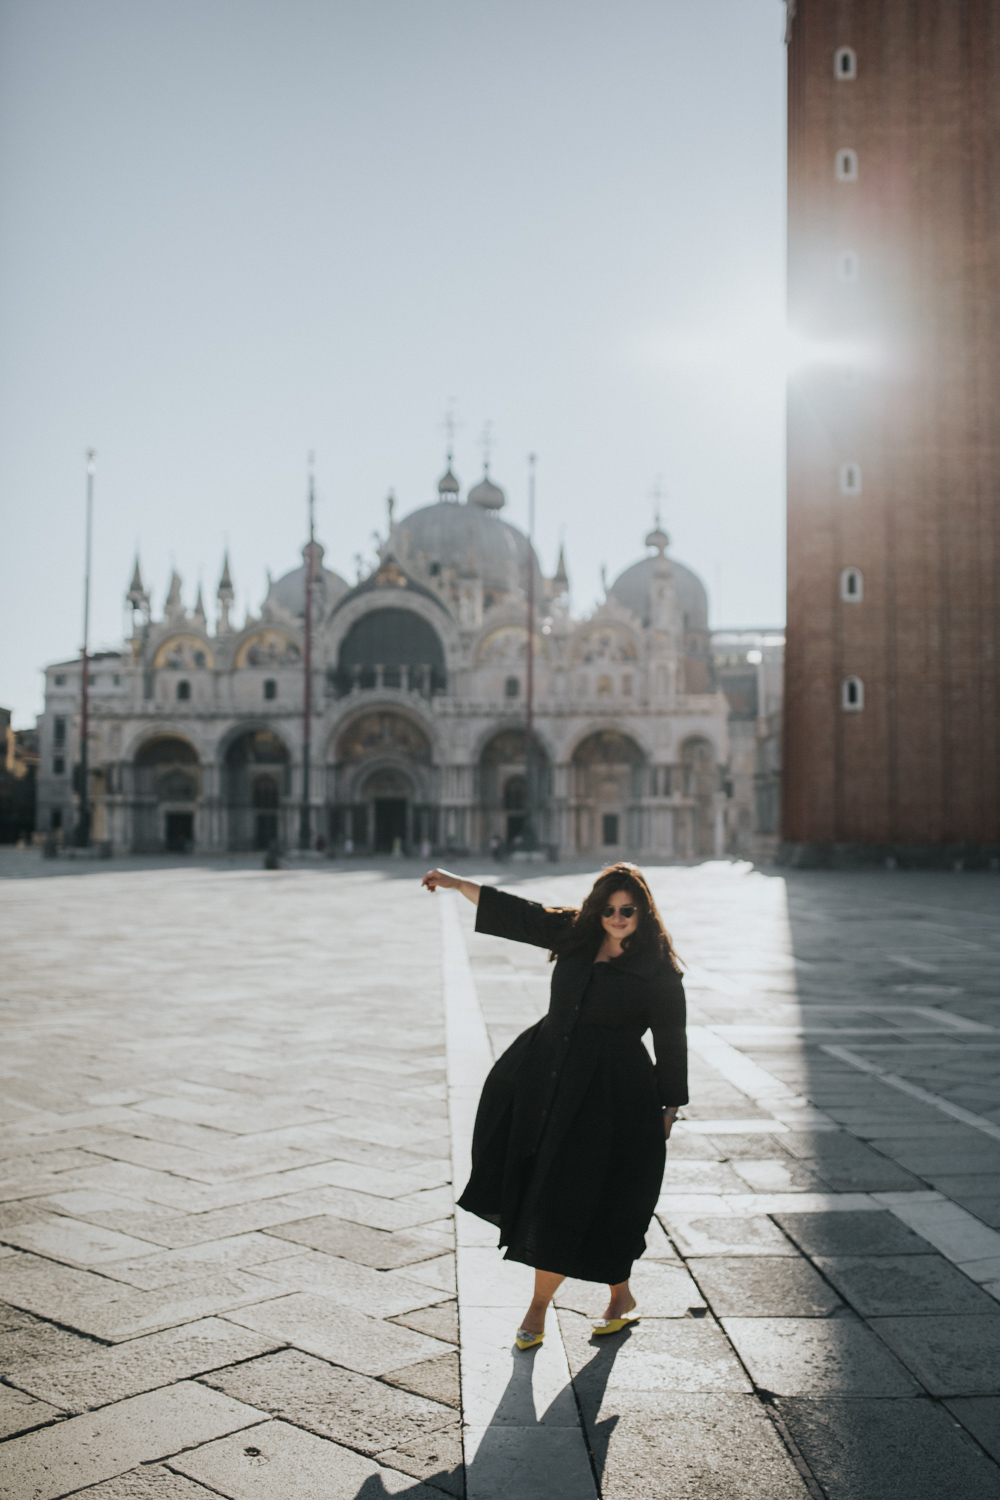 Female portraits, San Marco Square in Venice